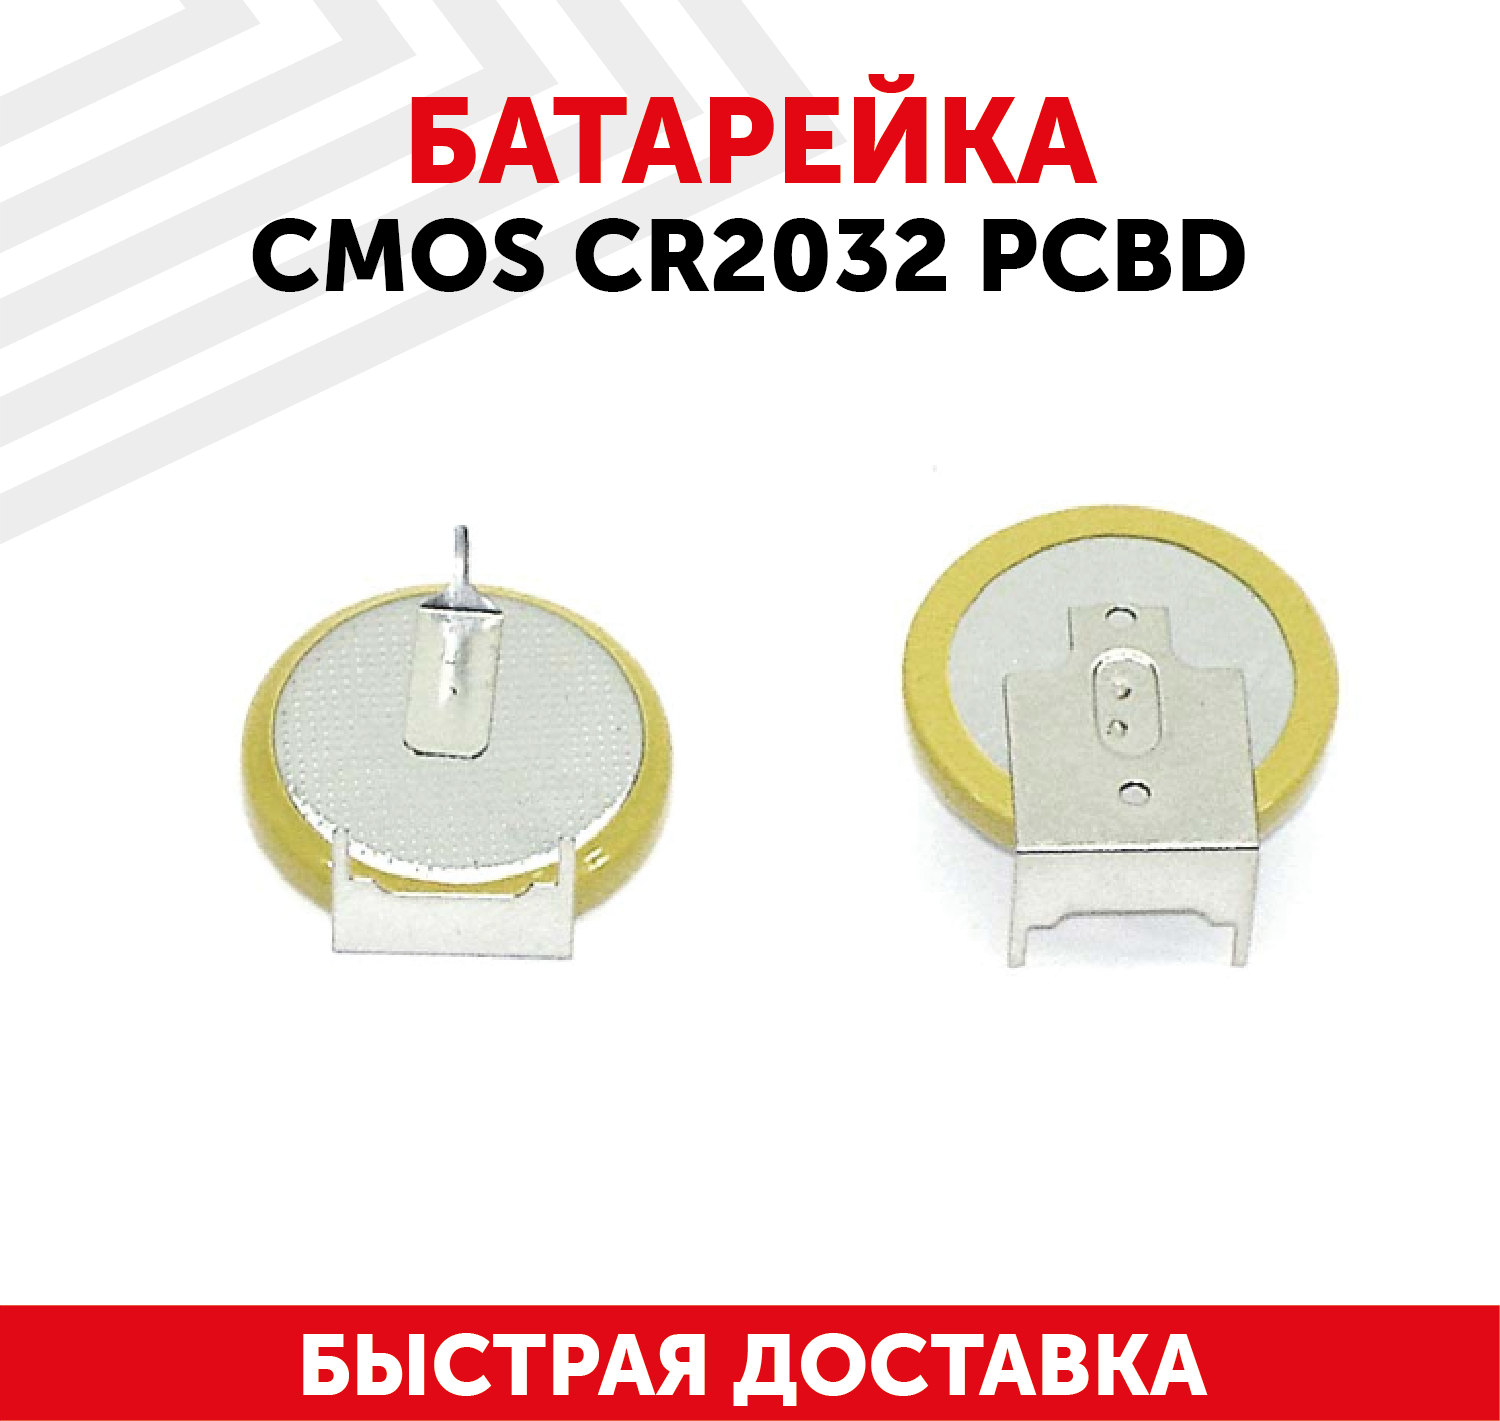 Батарейка (элемент питания таблетка) CMOS CR2032 PCBD 3В 210мАч для часов игрушек сигнализации фонарей брелоков